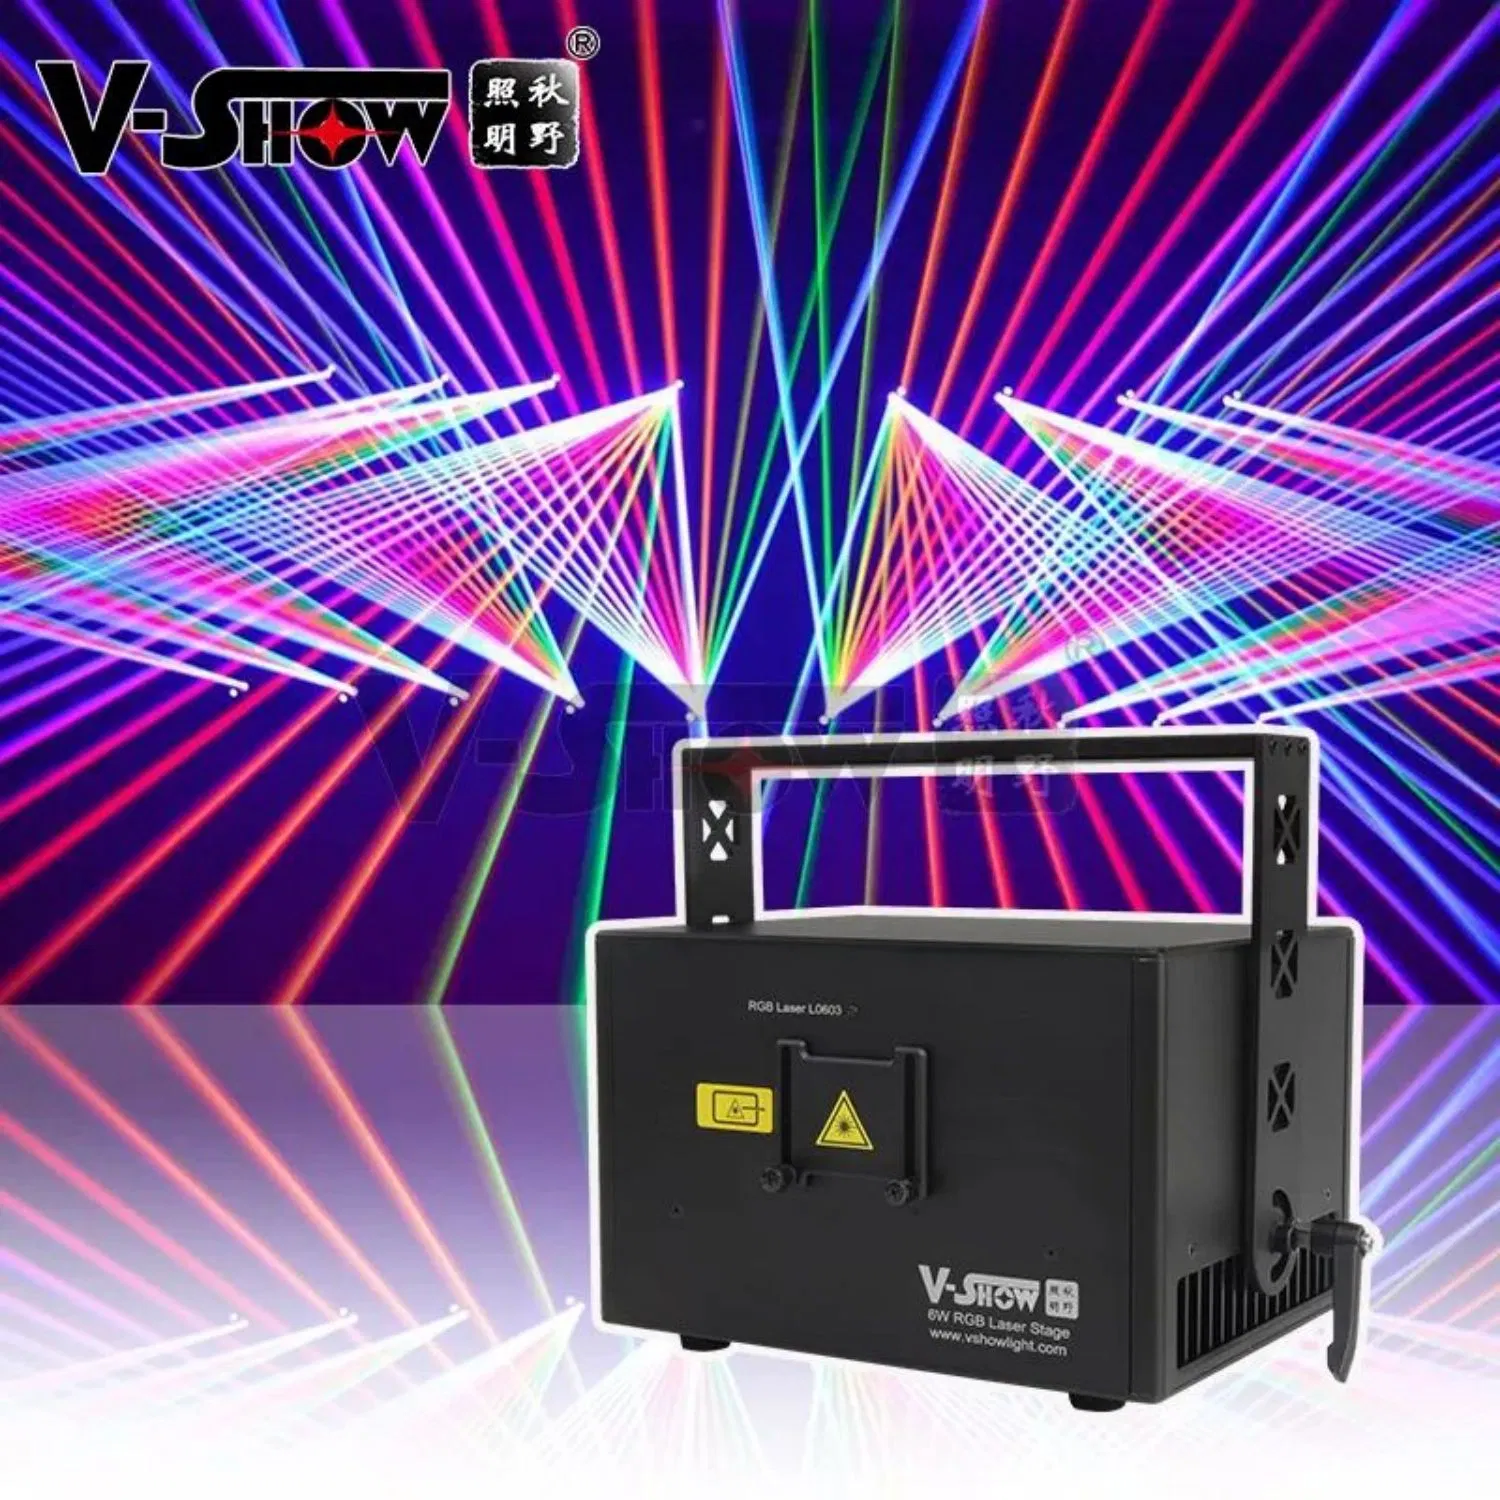 V-Show 6W 30kkps Sistema de escaneado de alta DMX Ilda 6W RGB a todo color láser de DJ Luz discoteca